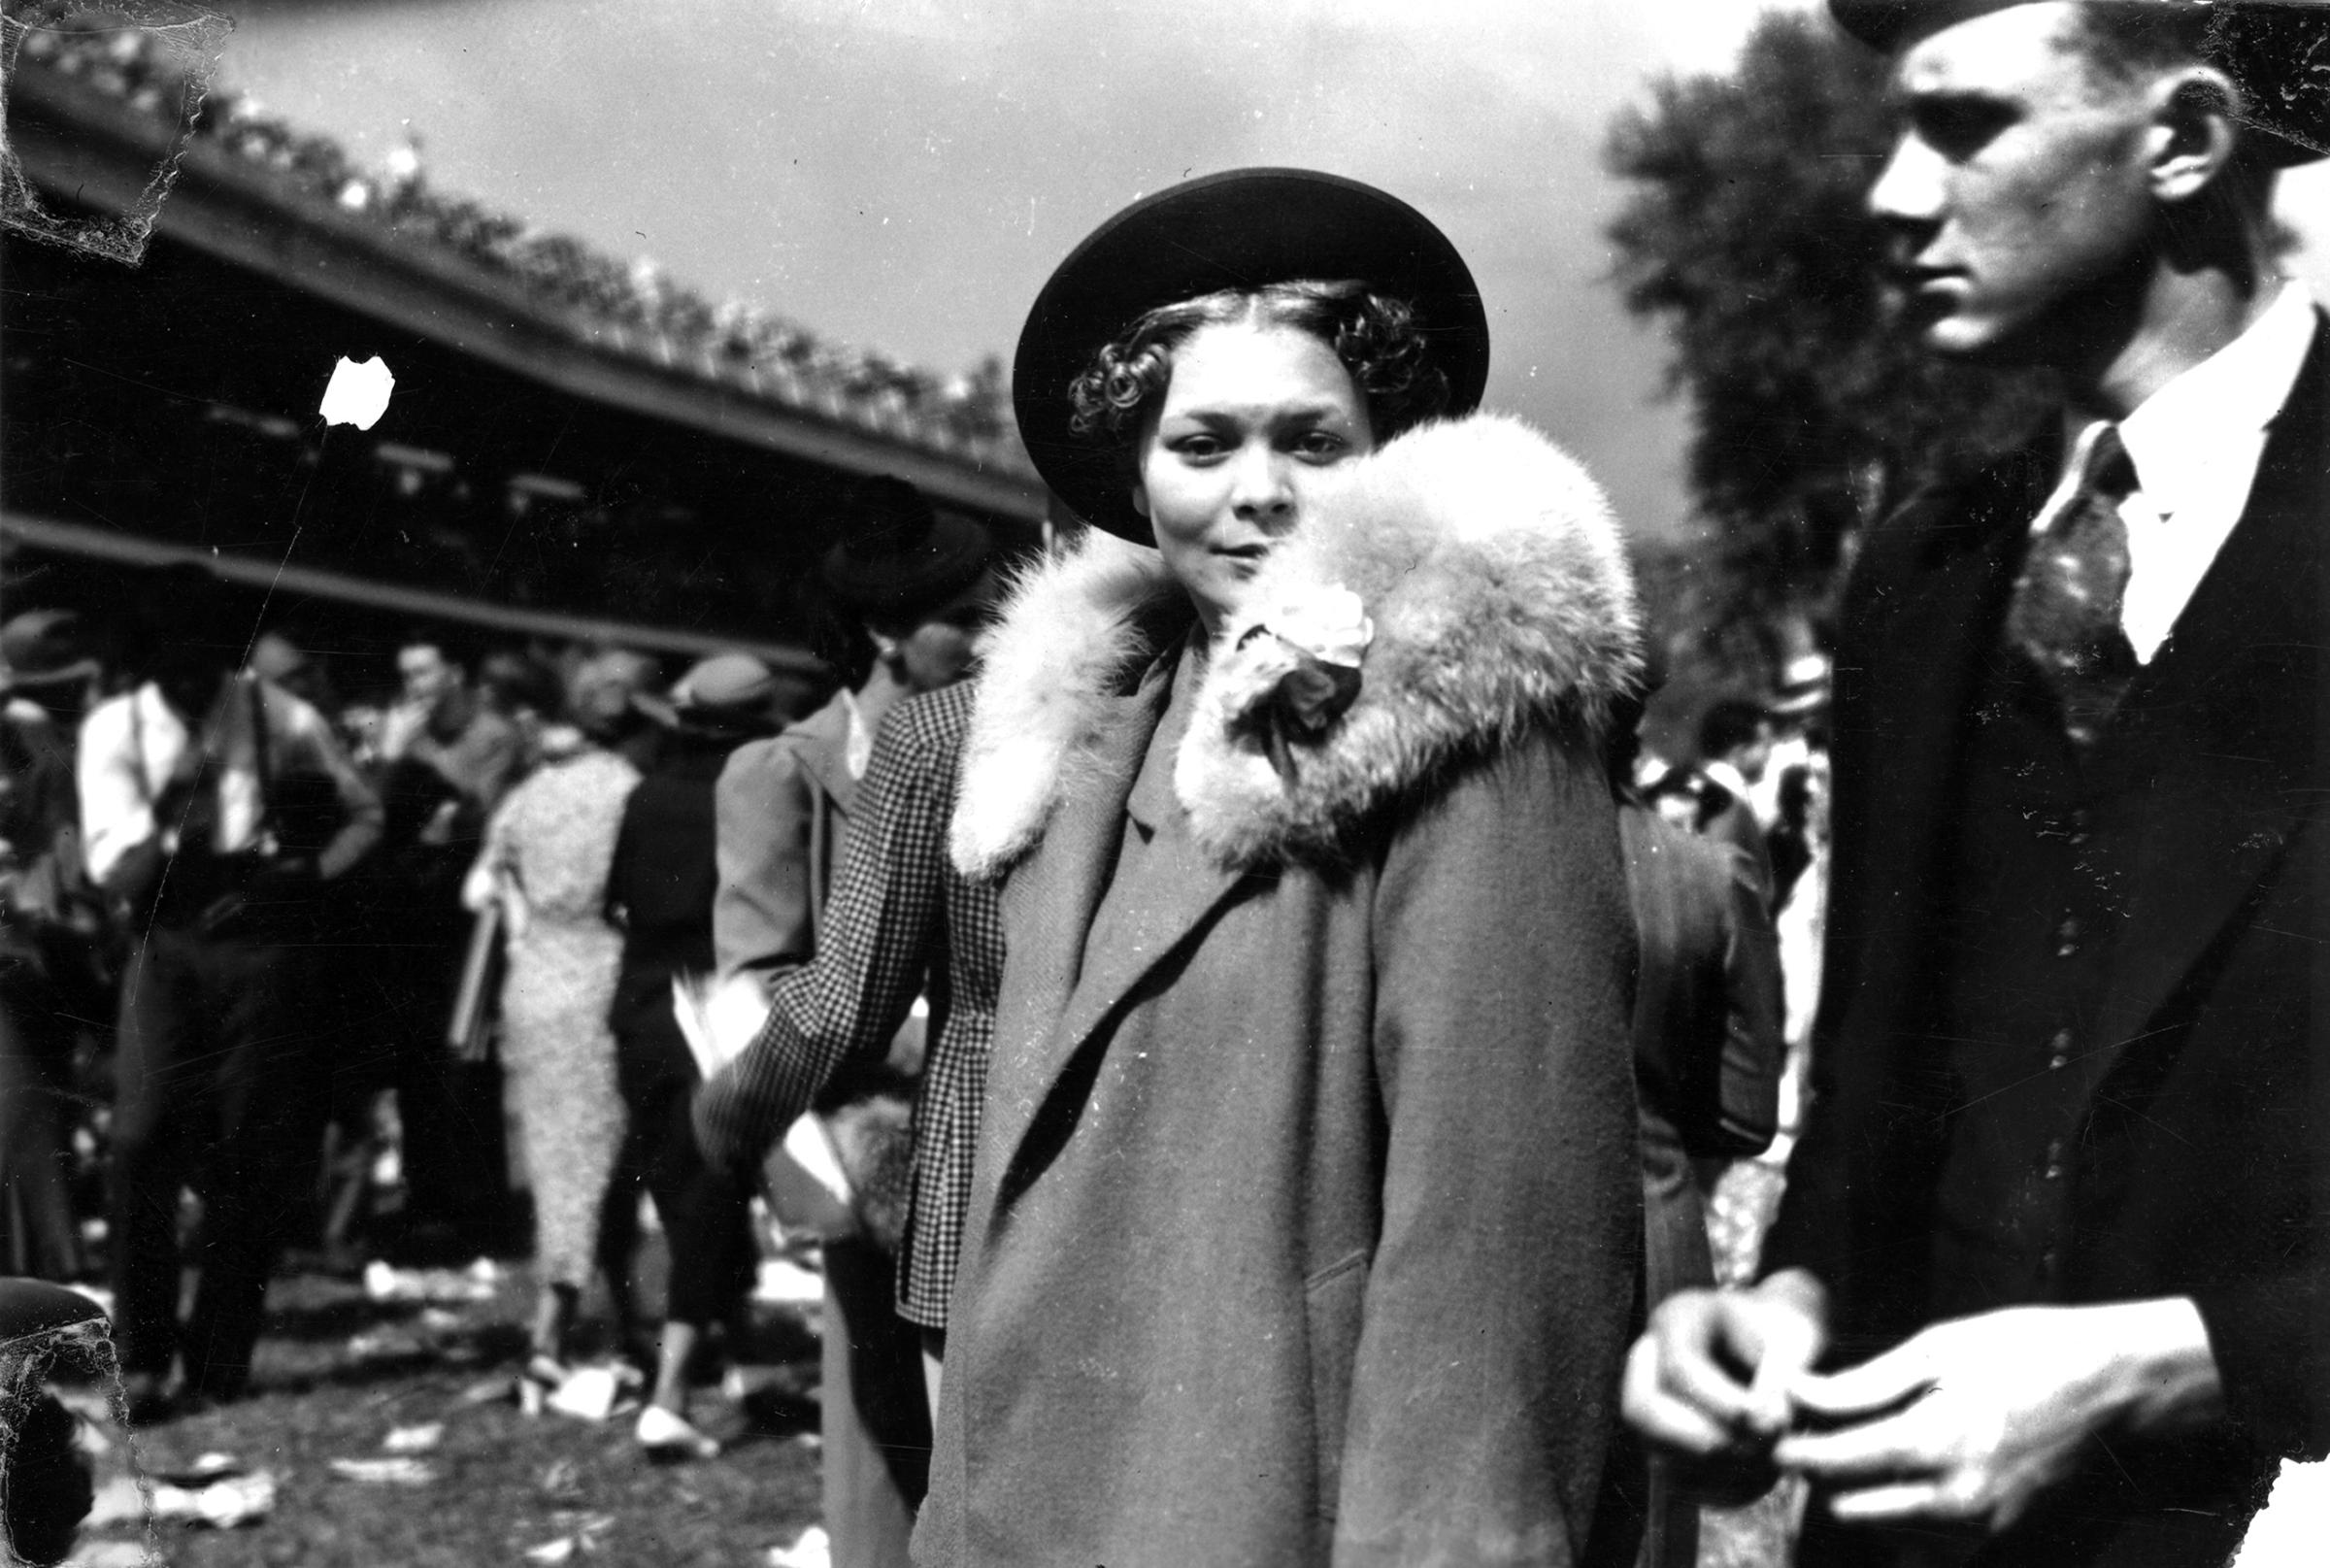 Ms. Doris Murphy attending the Kentucky Derby, Louisville, Kentucky, 1938.